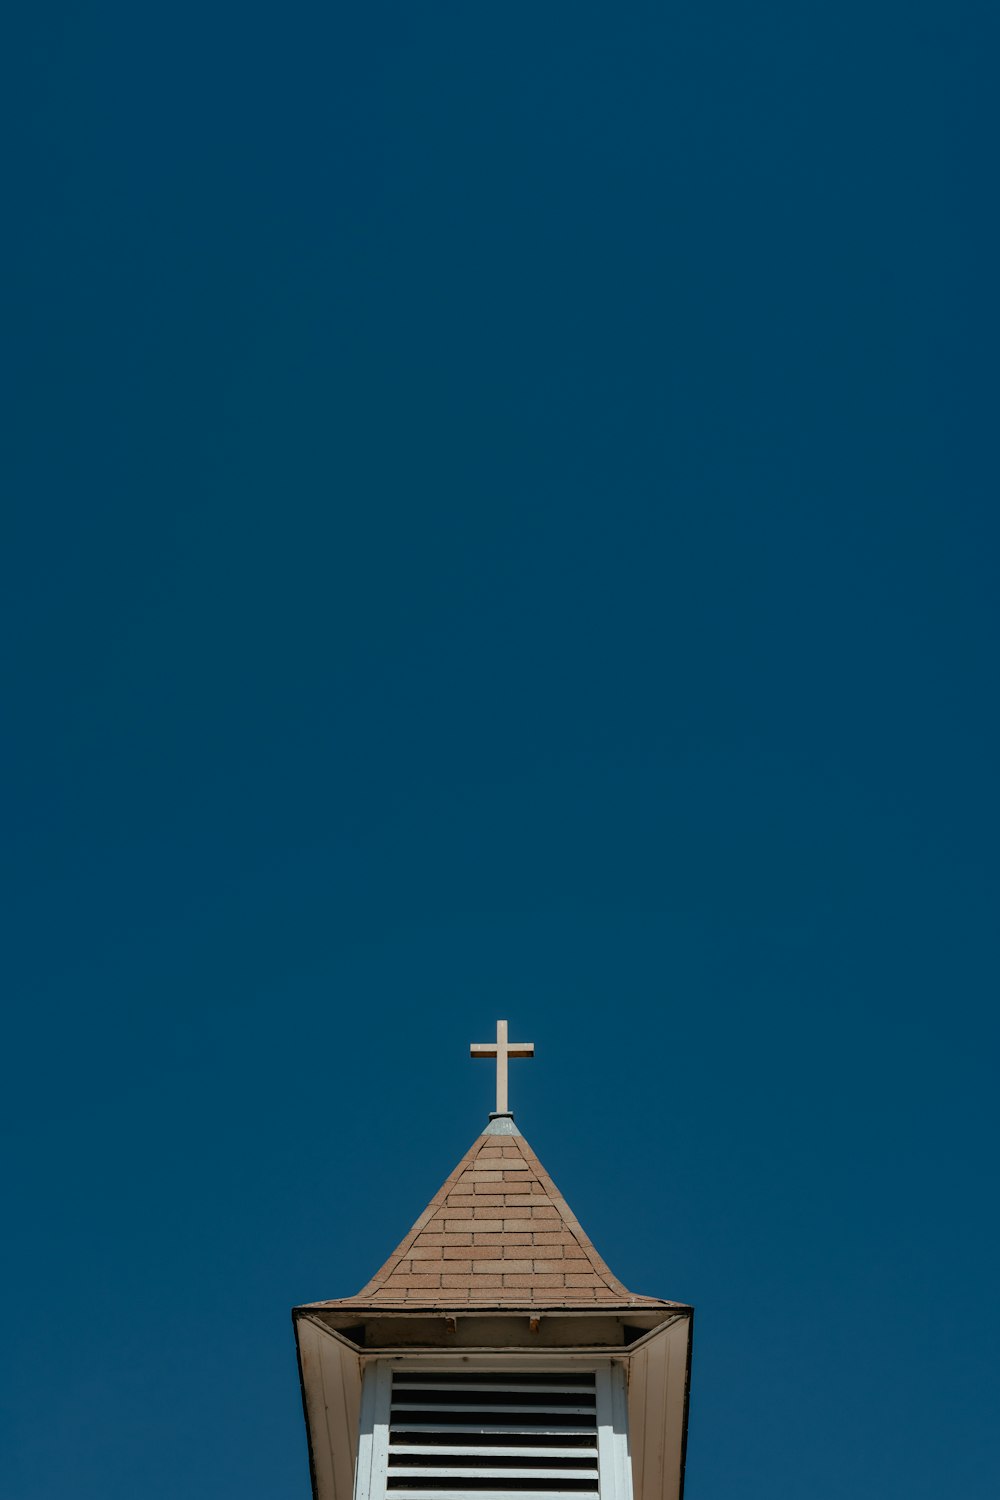 十字架が上にある教会の尖塔